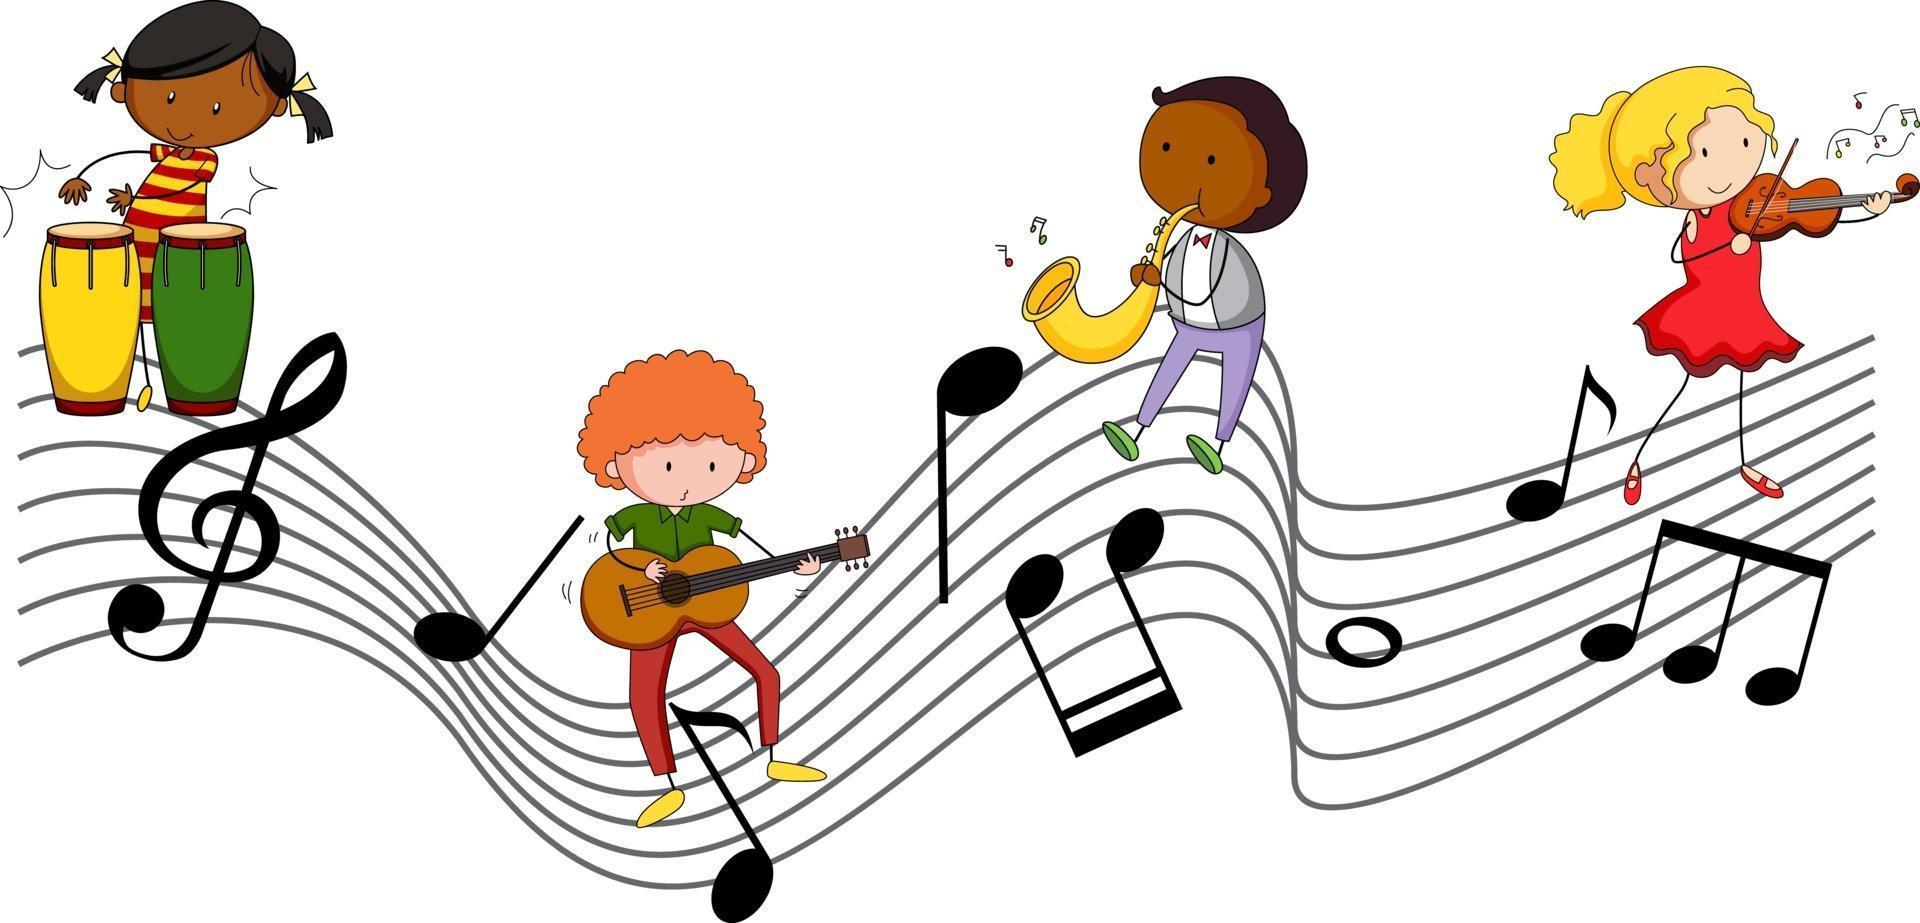 muzikale melodiesymbolen met veel stripfiguren voor doodle kinderen vector